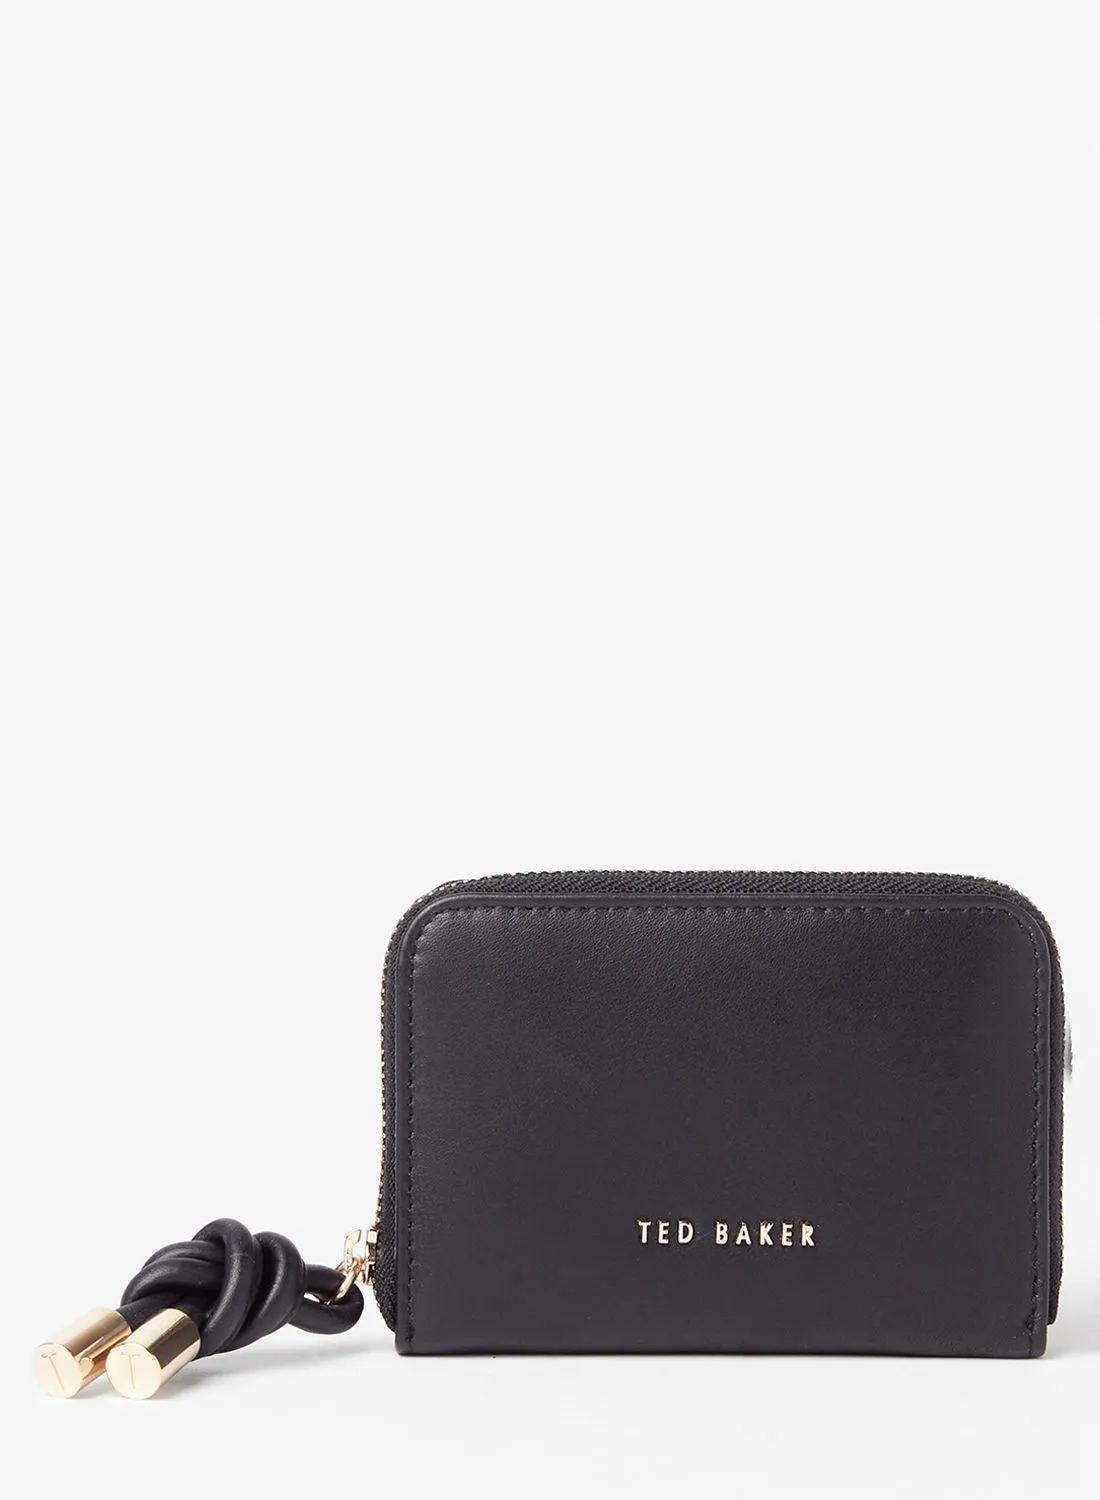 حقيبة يد صغيرة معقودة من تيد بيكر باللون الأسود